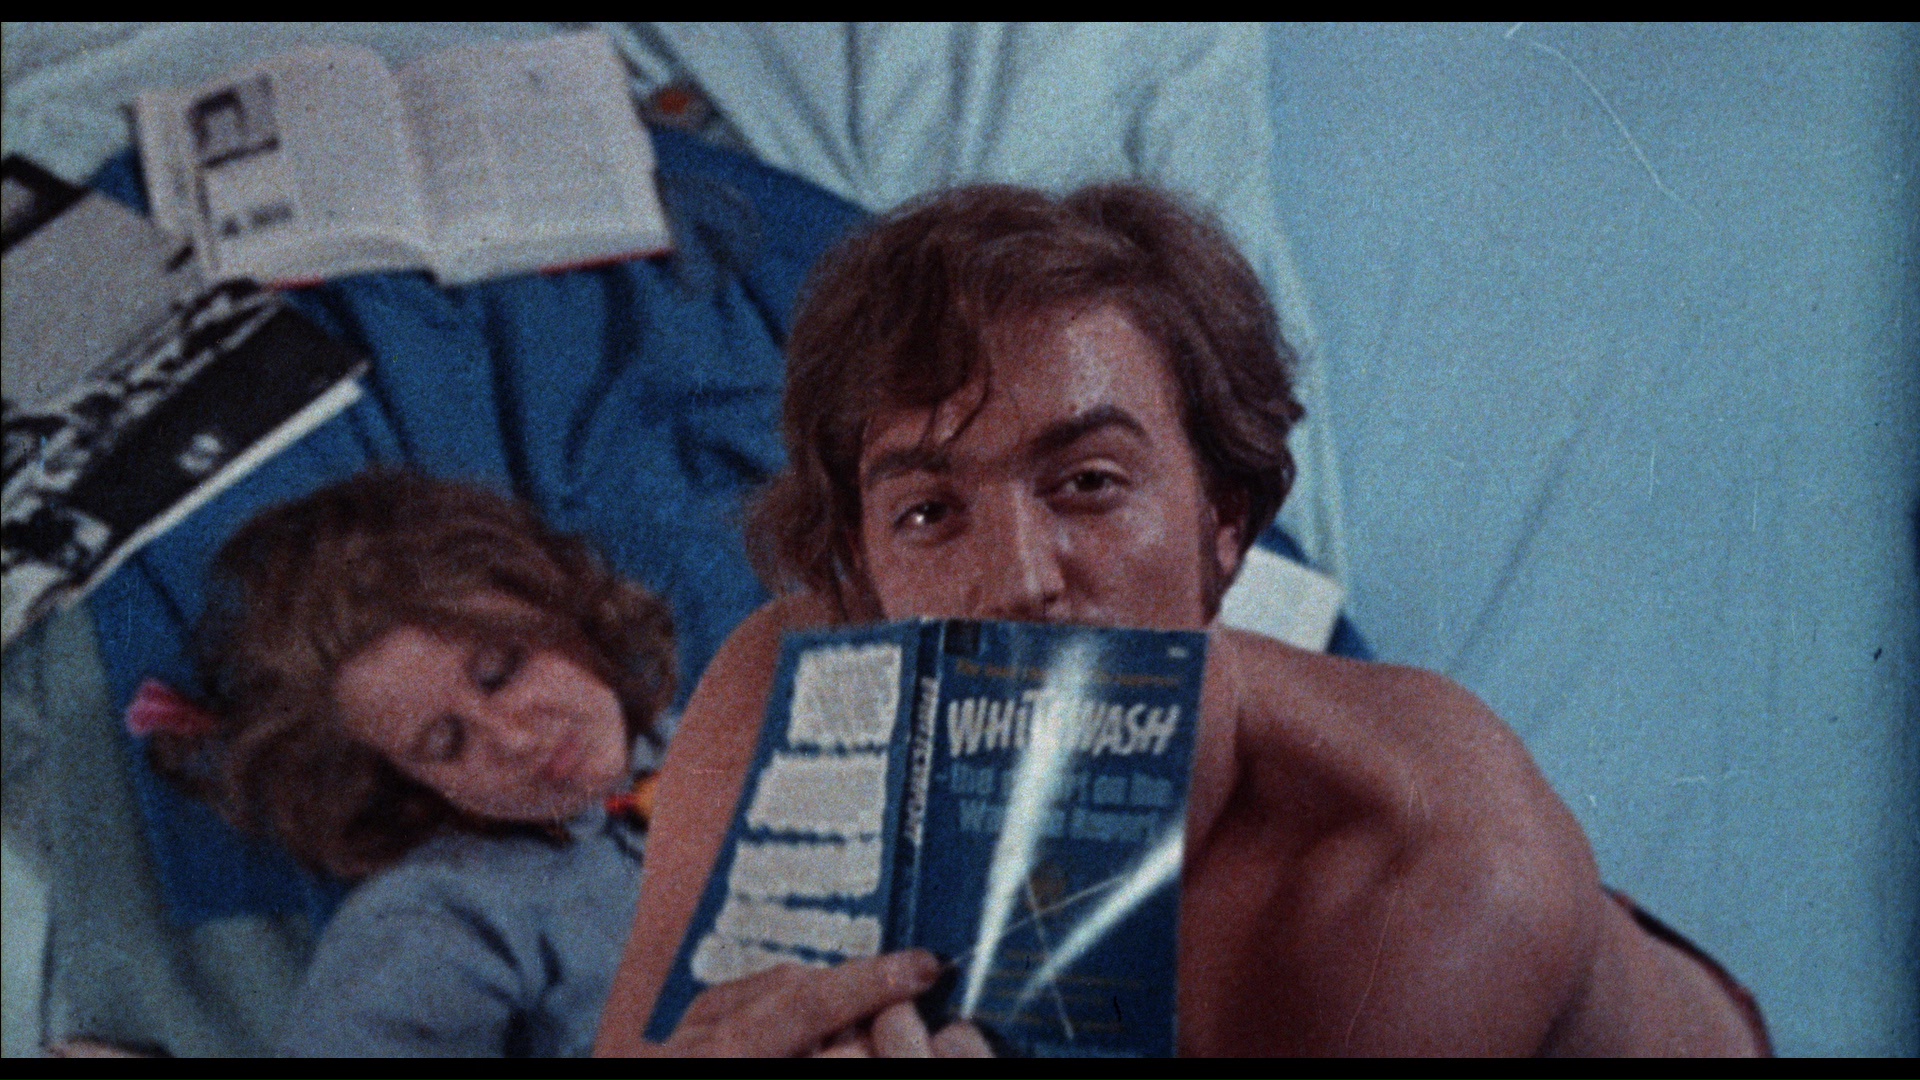 Greetings-1968-27x41-Brian De Palma-Robert De Niro-RARE-X rating!